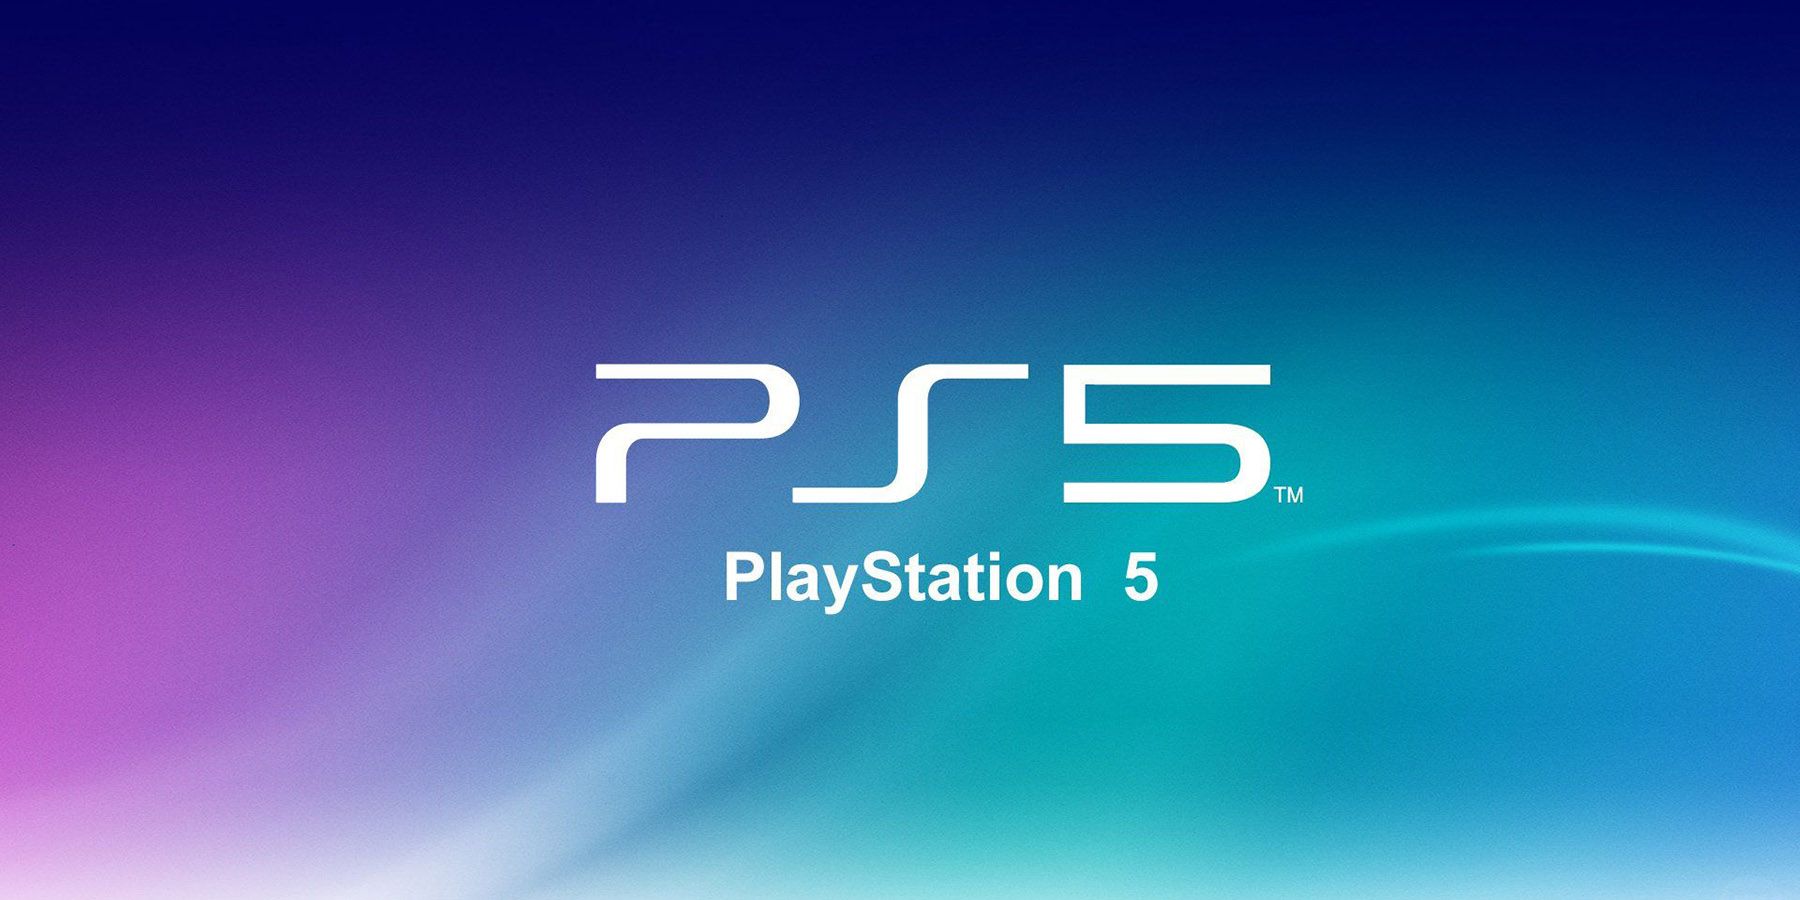 Il brevetto Sony suggerisce che PlayStation ora potrebbe aggiungere giochi PS5